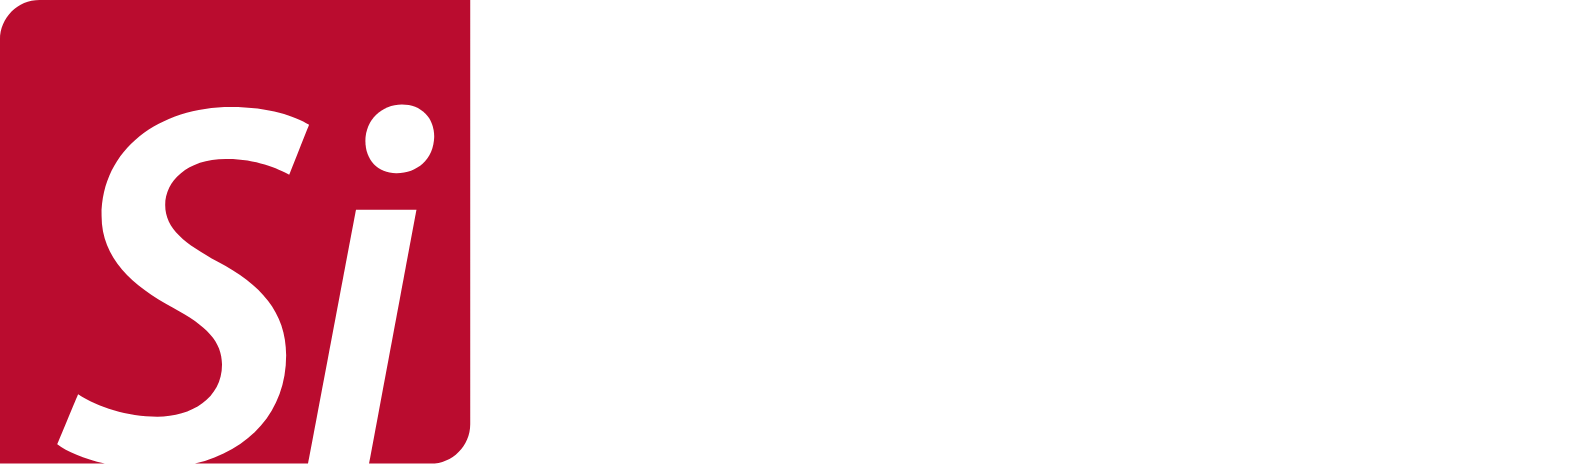 SiTime logo large for dark backgrounds (transparent PNG)